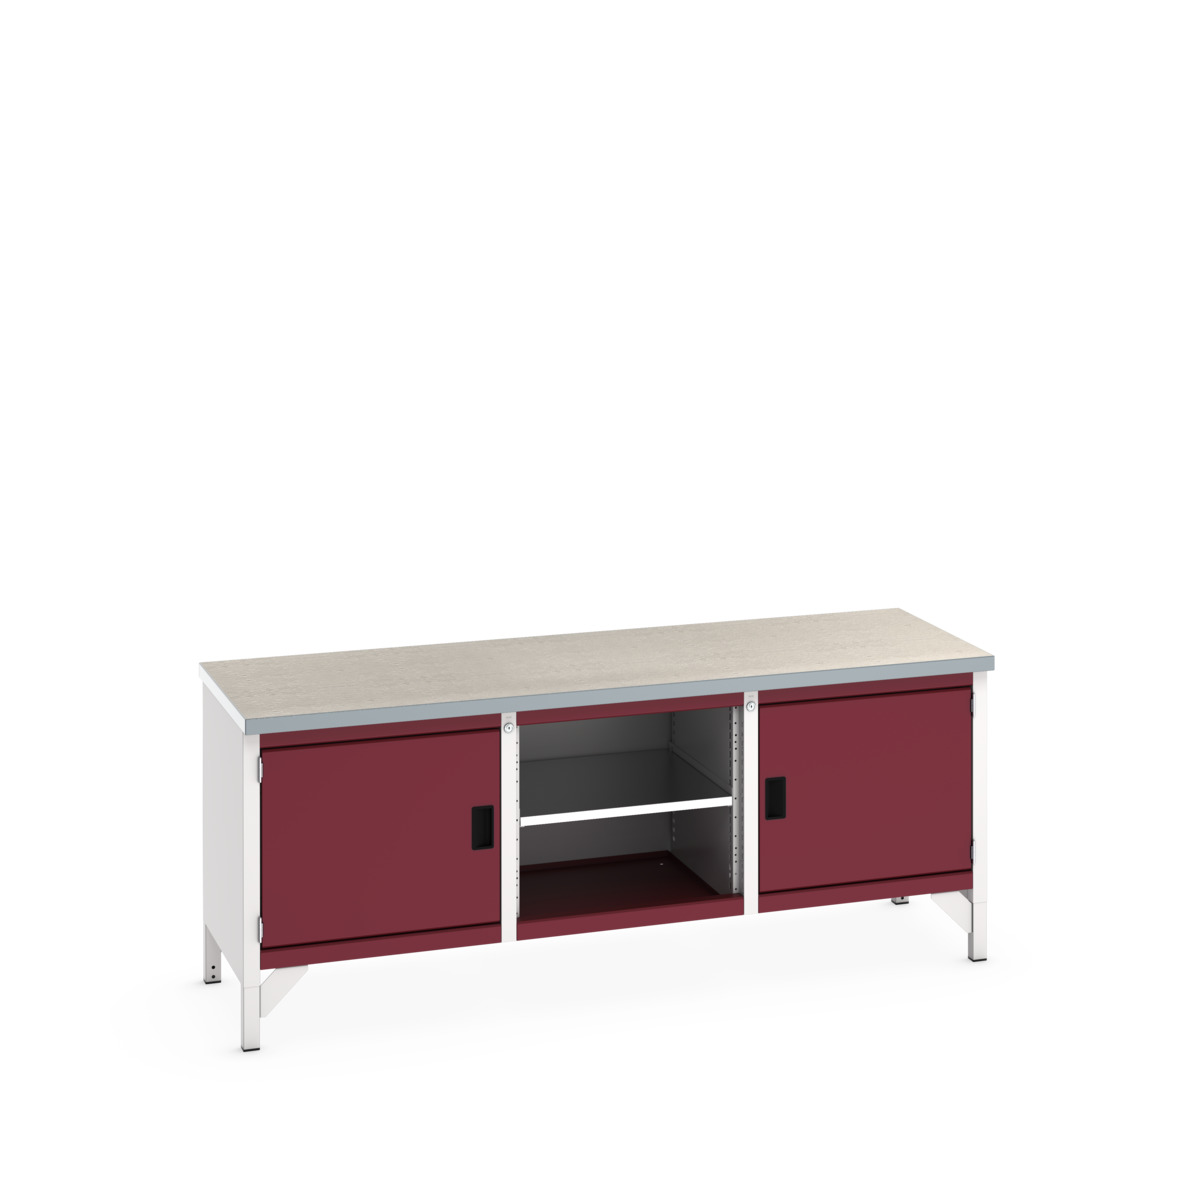 41002051.24V - cubio storage bench (lino)